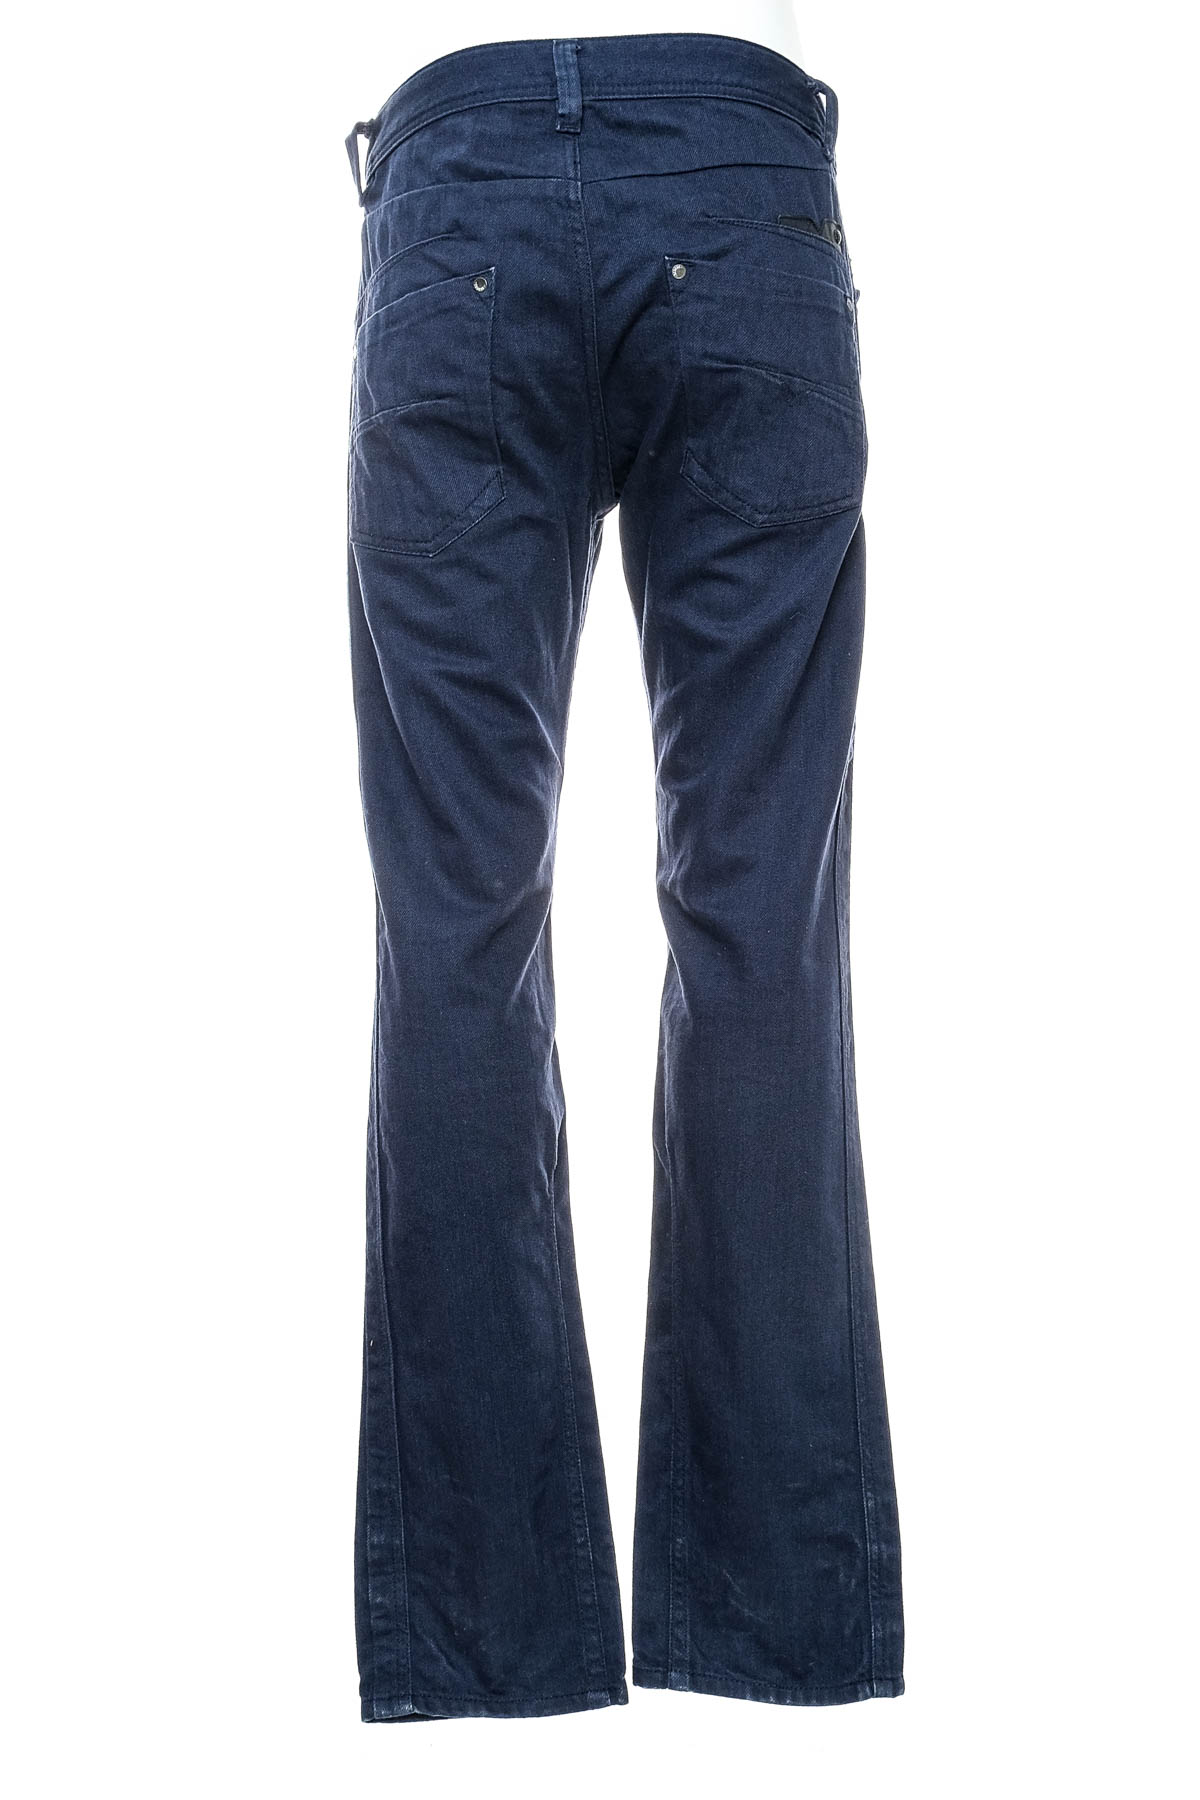 Jeans pentru bărbăți - DIESEL - 1